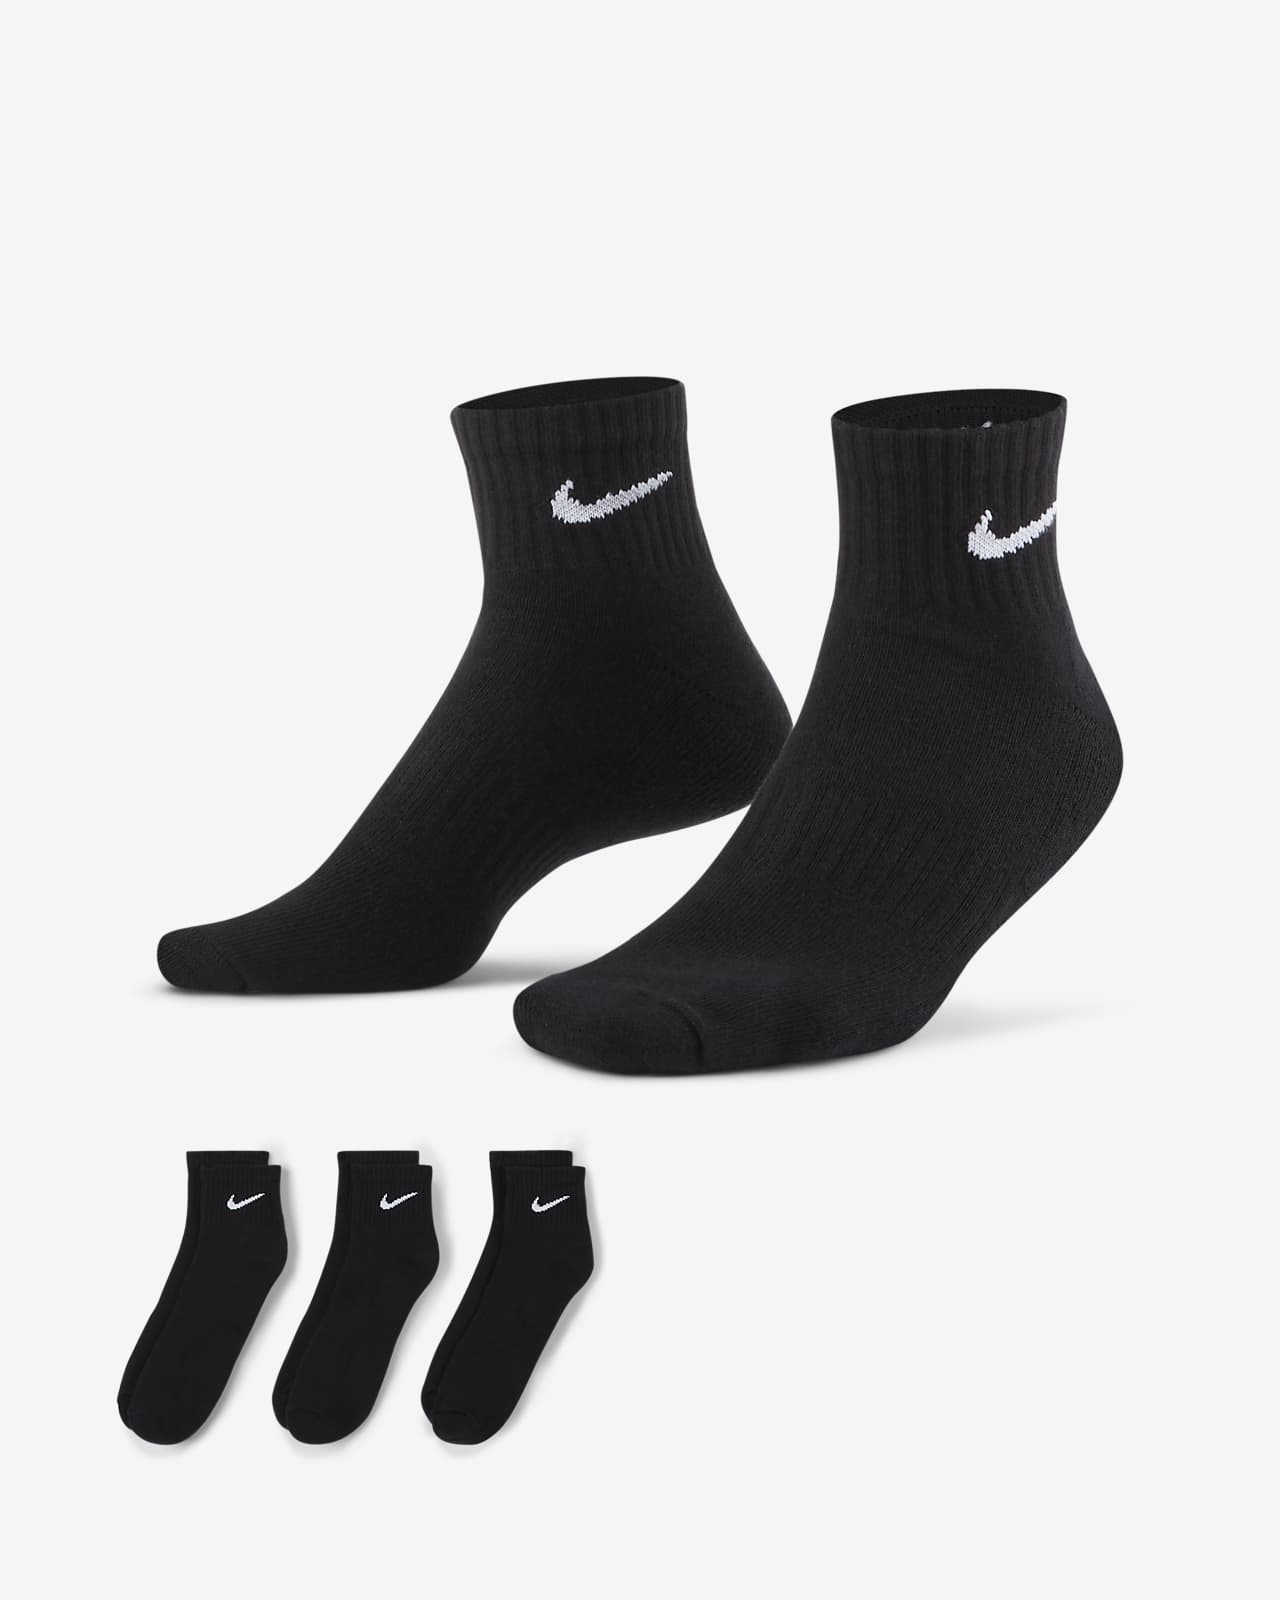 ถุงเท้าเทรนนิ่งหุ้มข้อ Nike Everyday Cushioned (3 คู่)